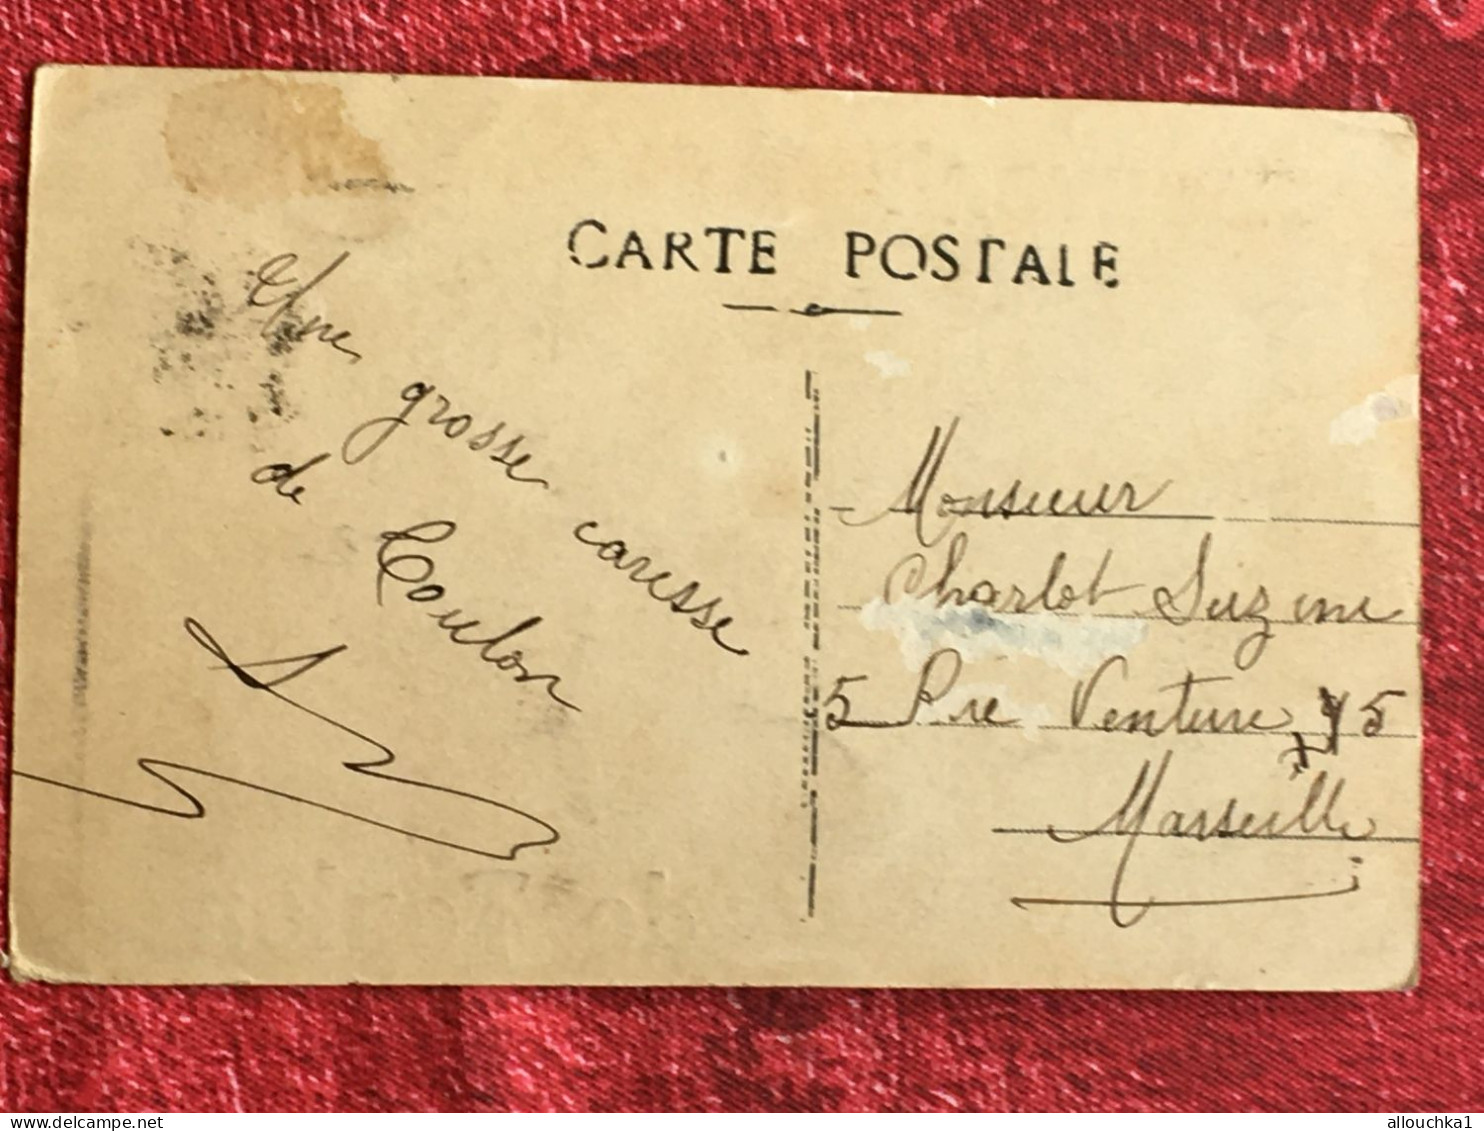 CPA - Thème Souvenir De Toulon - Pensée Trèfle Carte Postale-Postcard-timbre Arraché - Saluti Da.../ Gruss Aus...